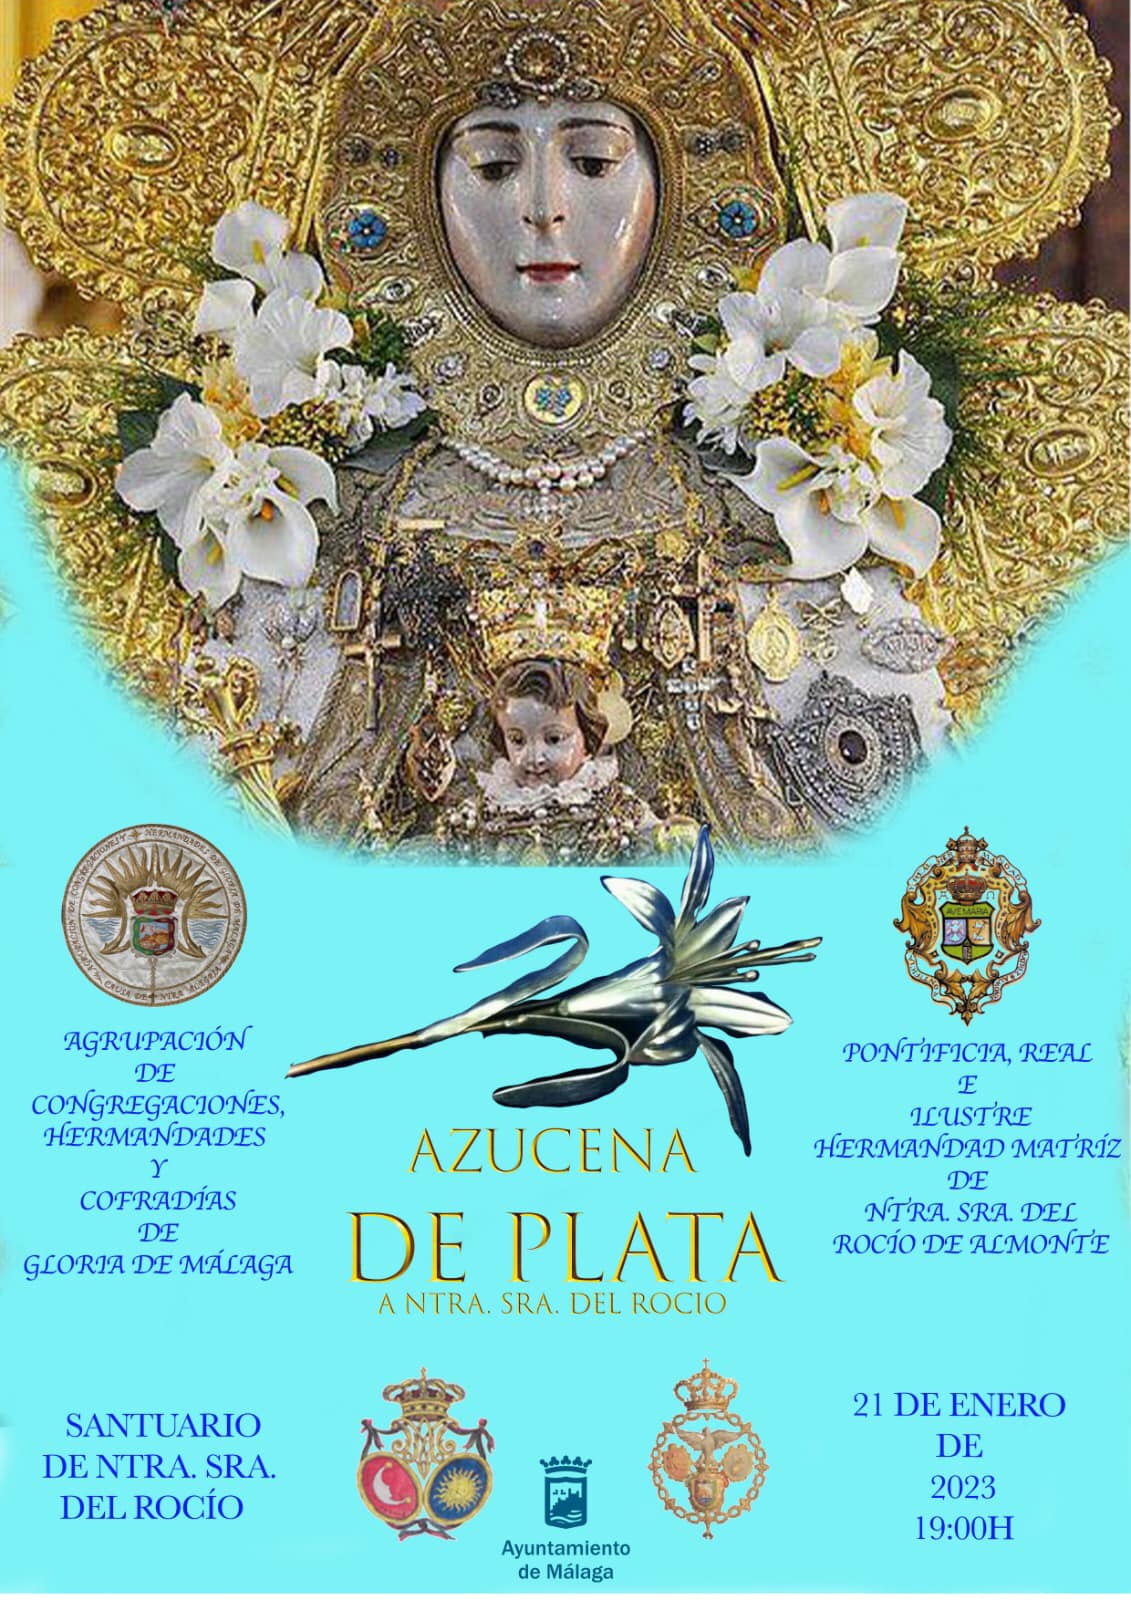 Acto de entrega – La Agrupación de Congregaciones, Hermandades y Cofradías  de Gloria de Málaga concede a la Virgen del Rocío la Azucena de Plata. |  